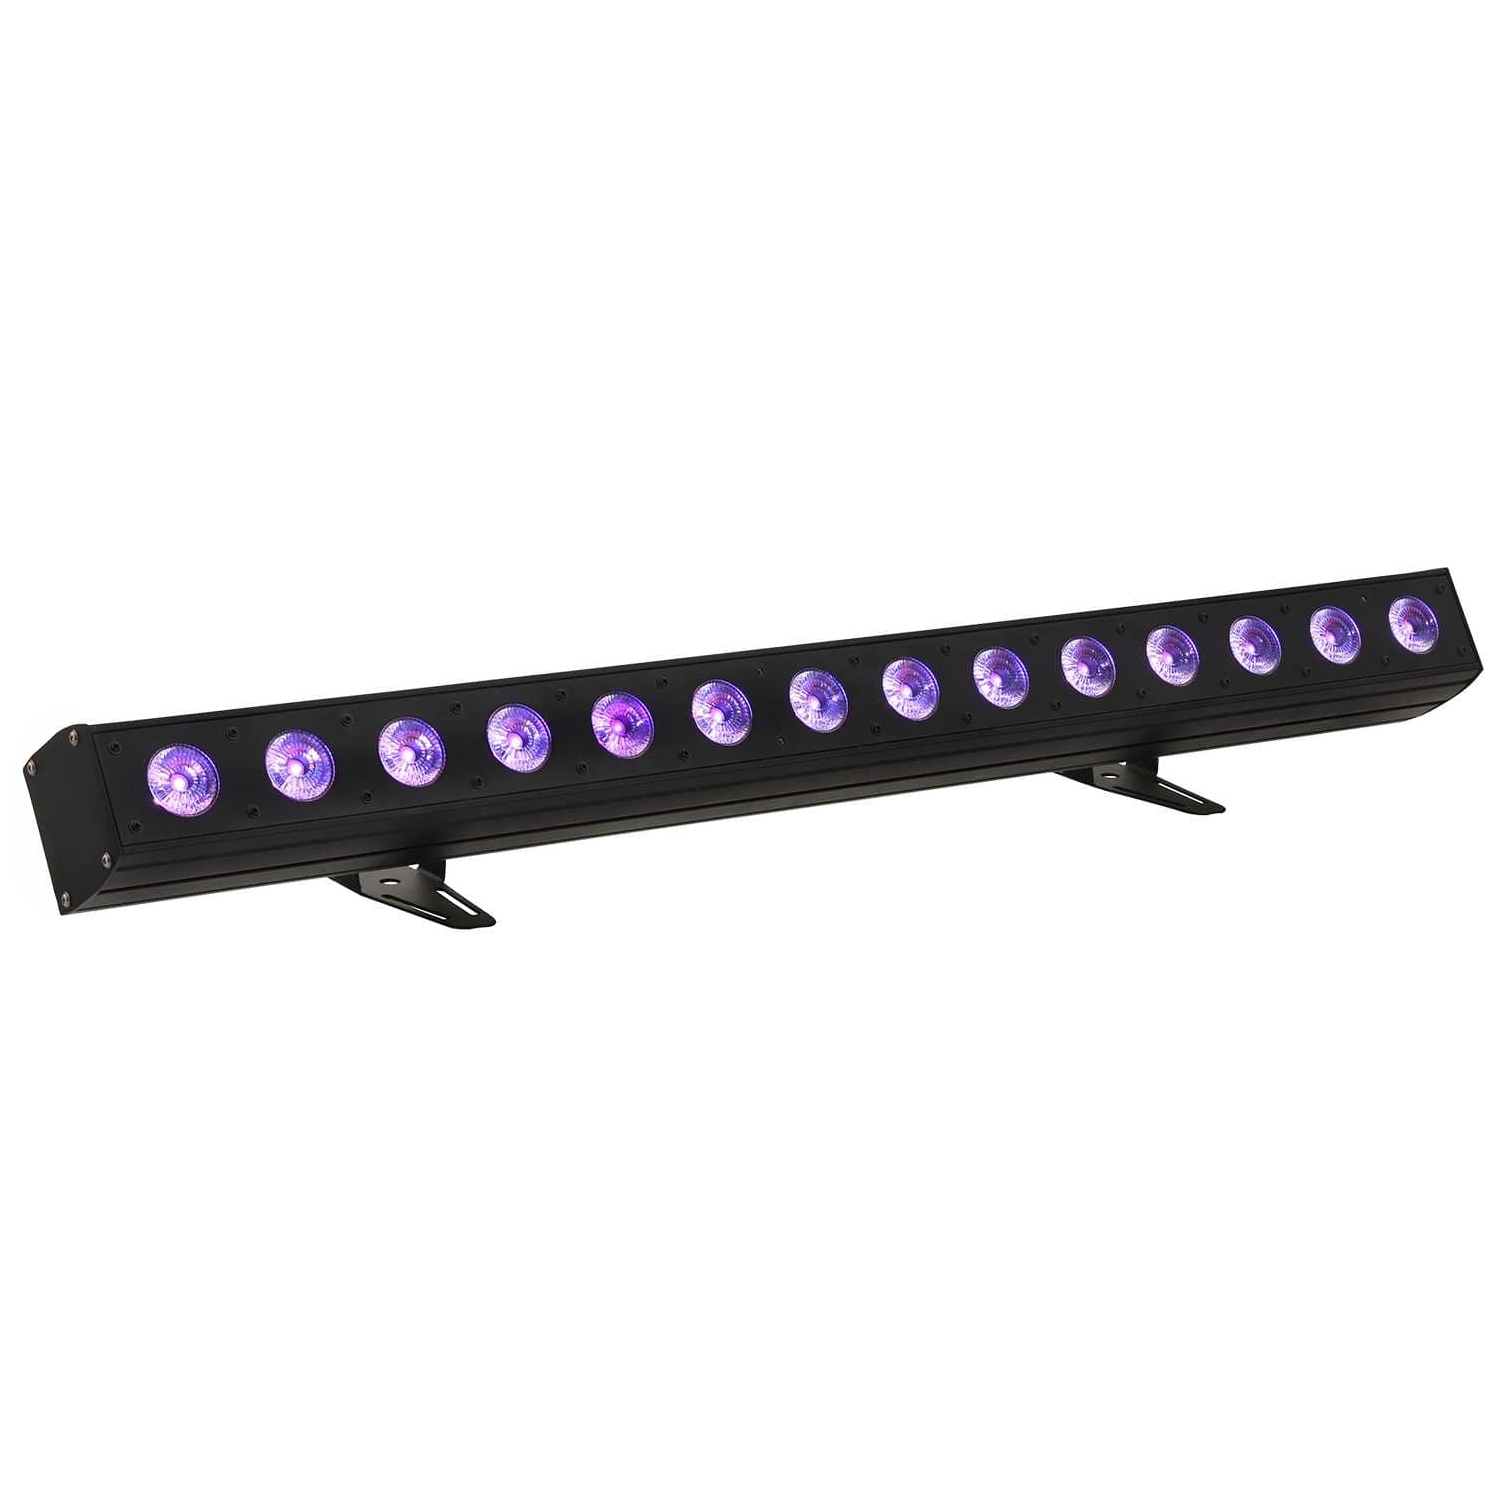 Nightlite Matrix LED Bar 14x10W RGBW B-Ware